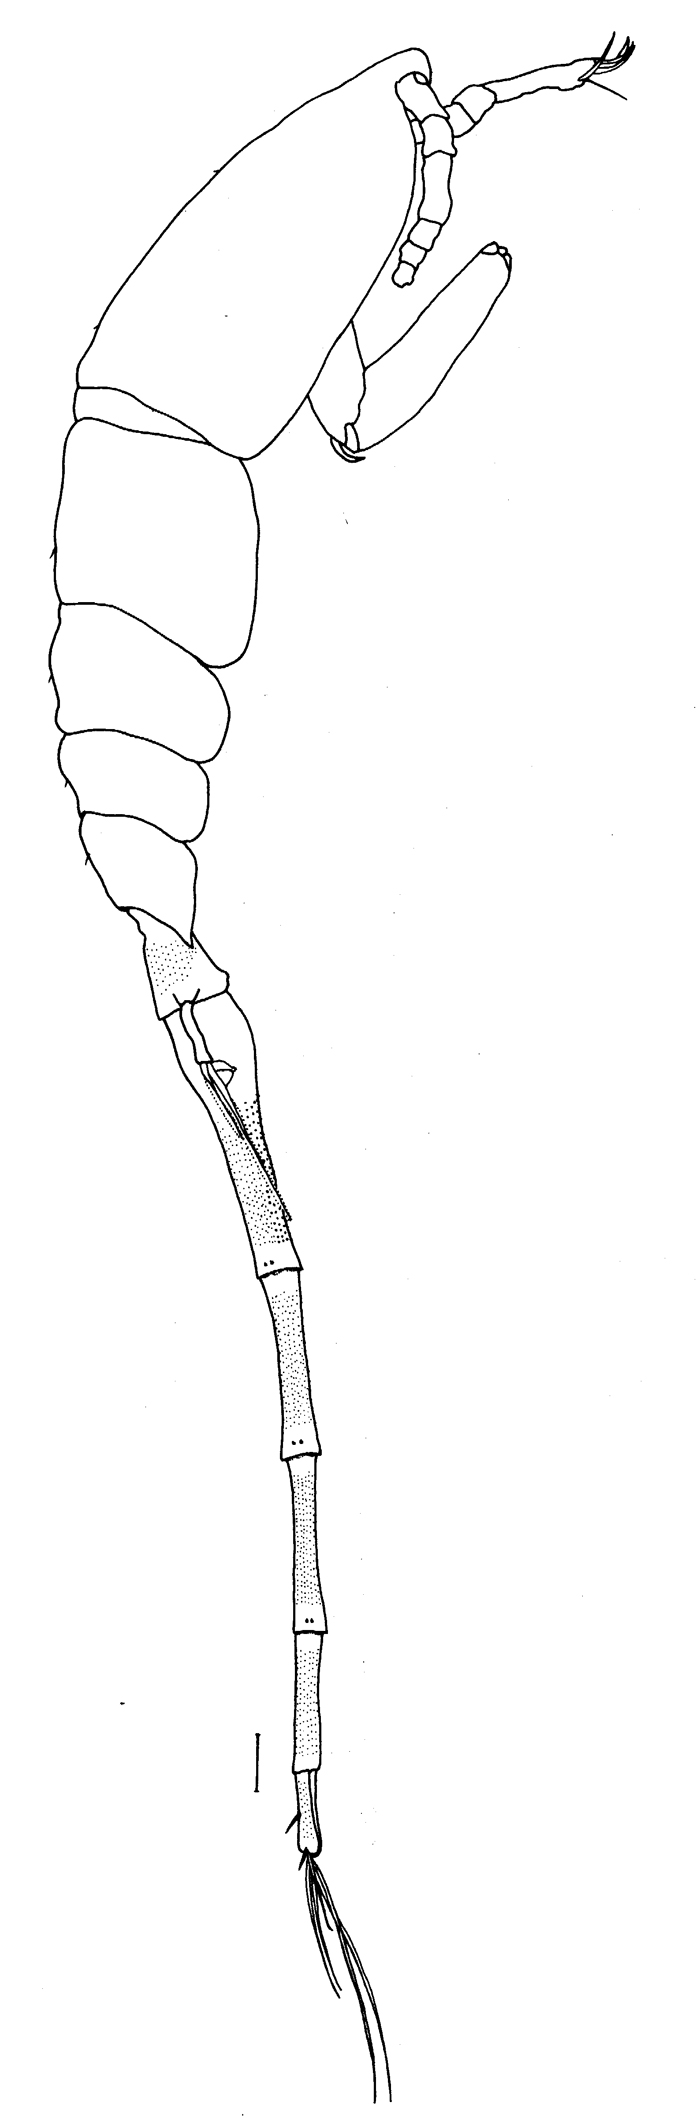 Espce Lubbockia wilsonae - Planche 4 de figures morphologiques